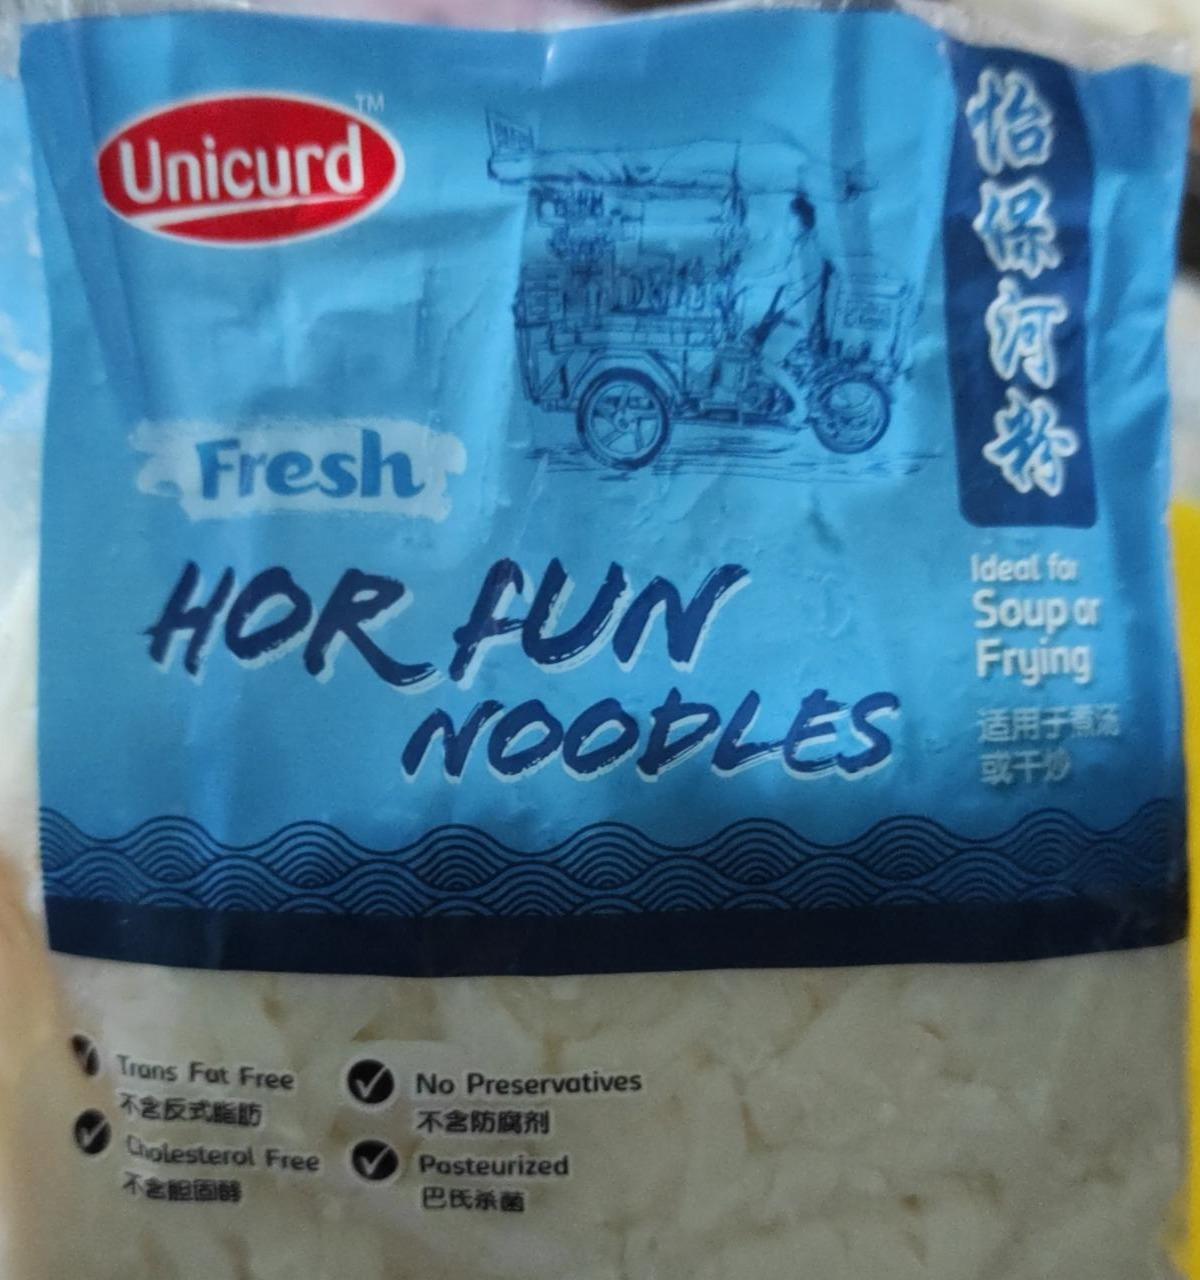 Fotografie - Fresh Hor Fun Noodles Unicurd